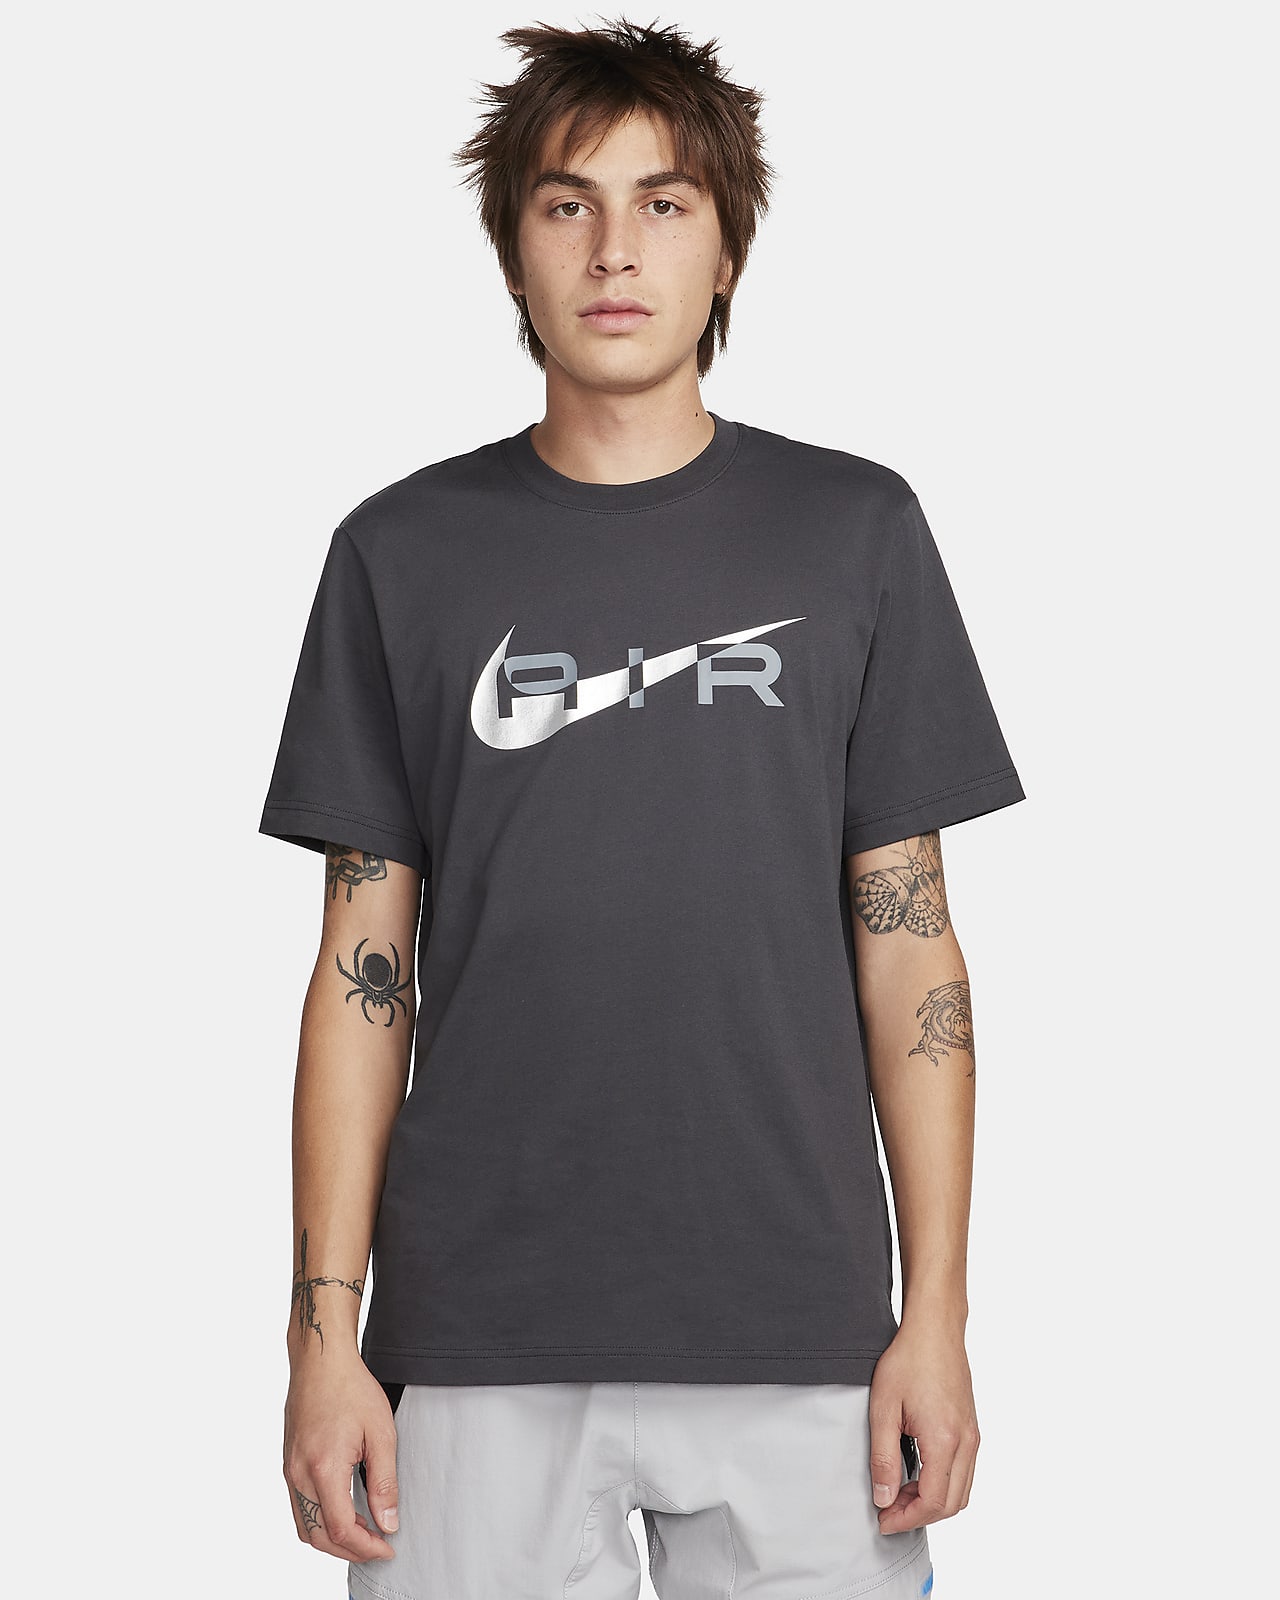 Men's White Tops & T-Shirts. Nike ZA